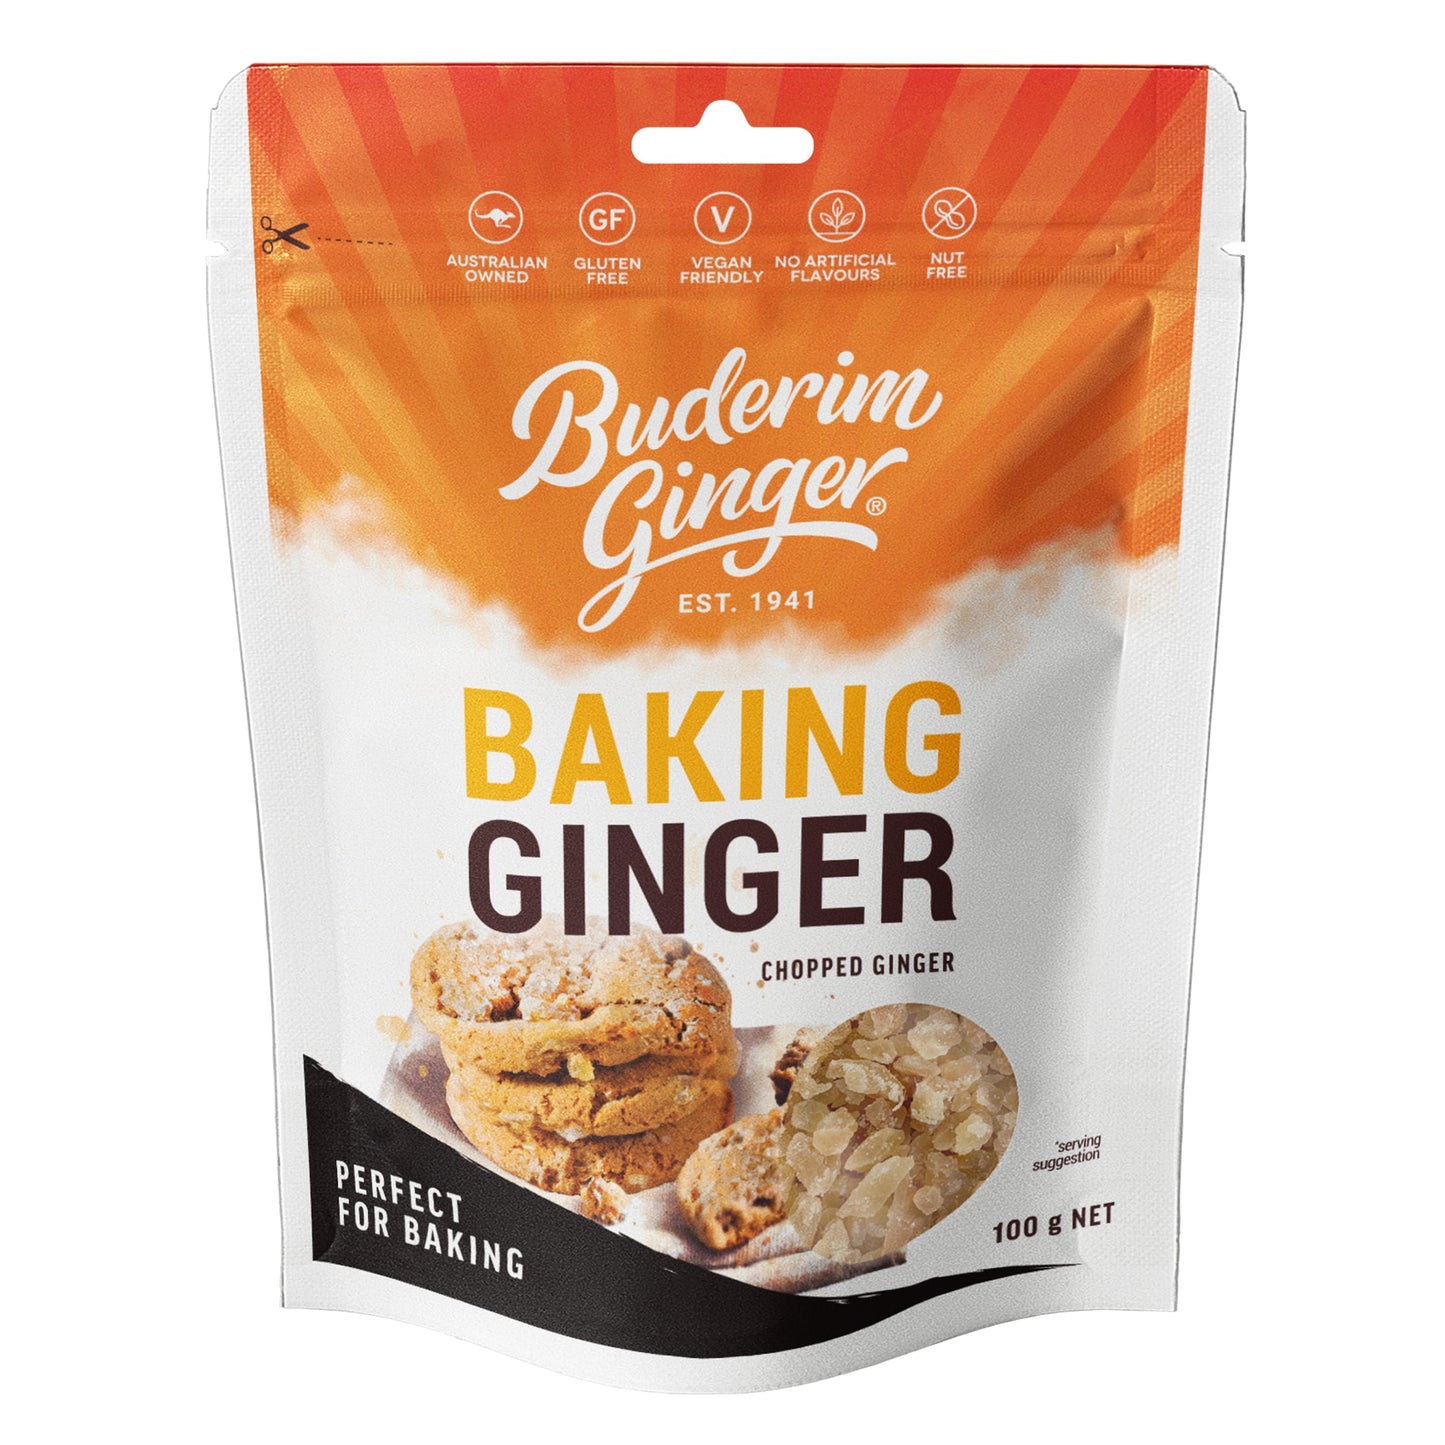 Buderim Ginger Baking Ginger 100g